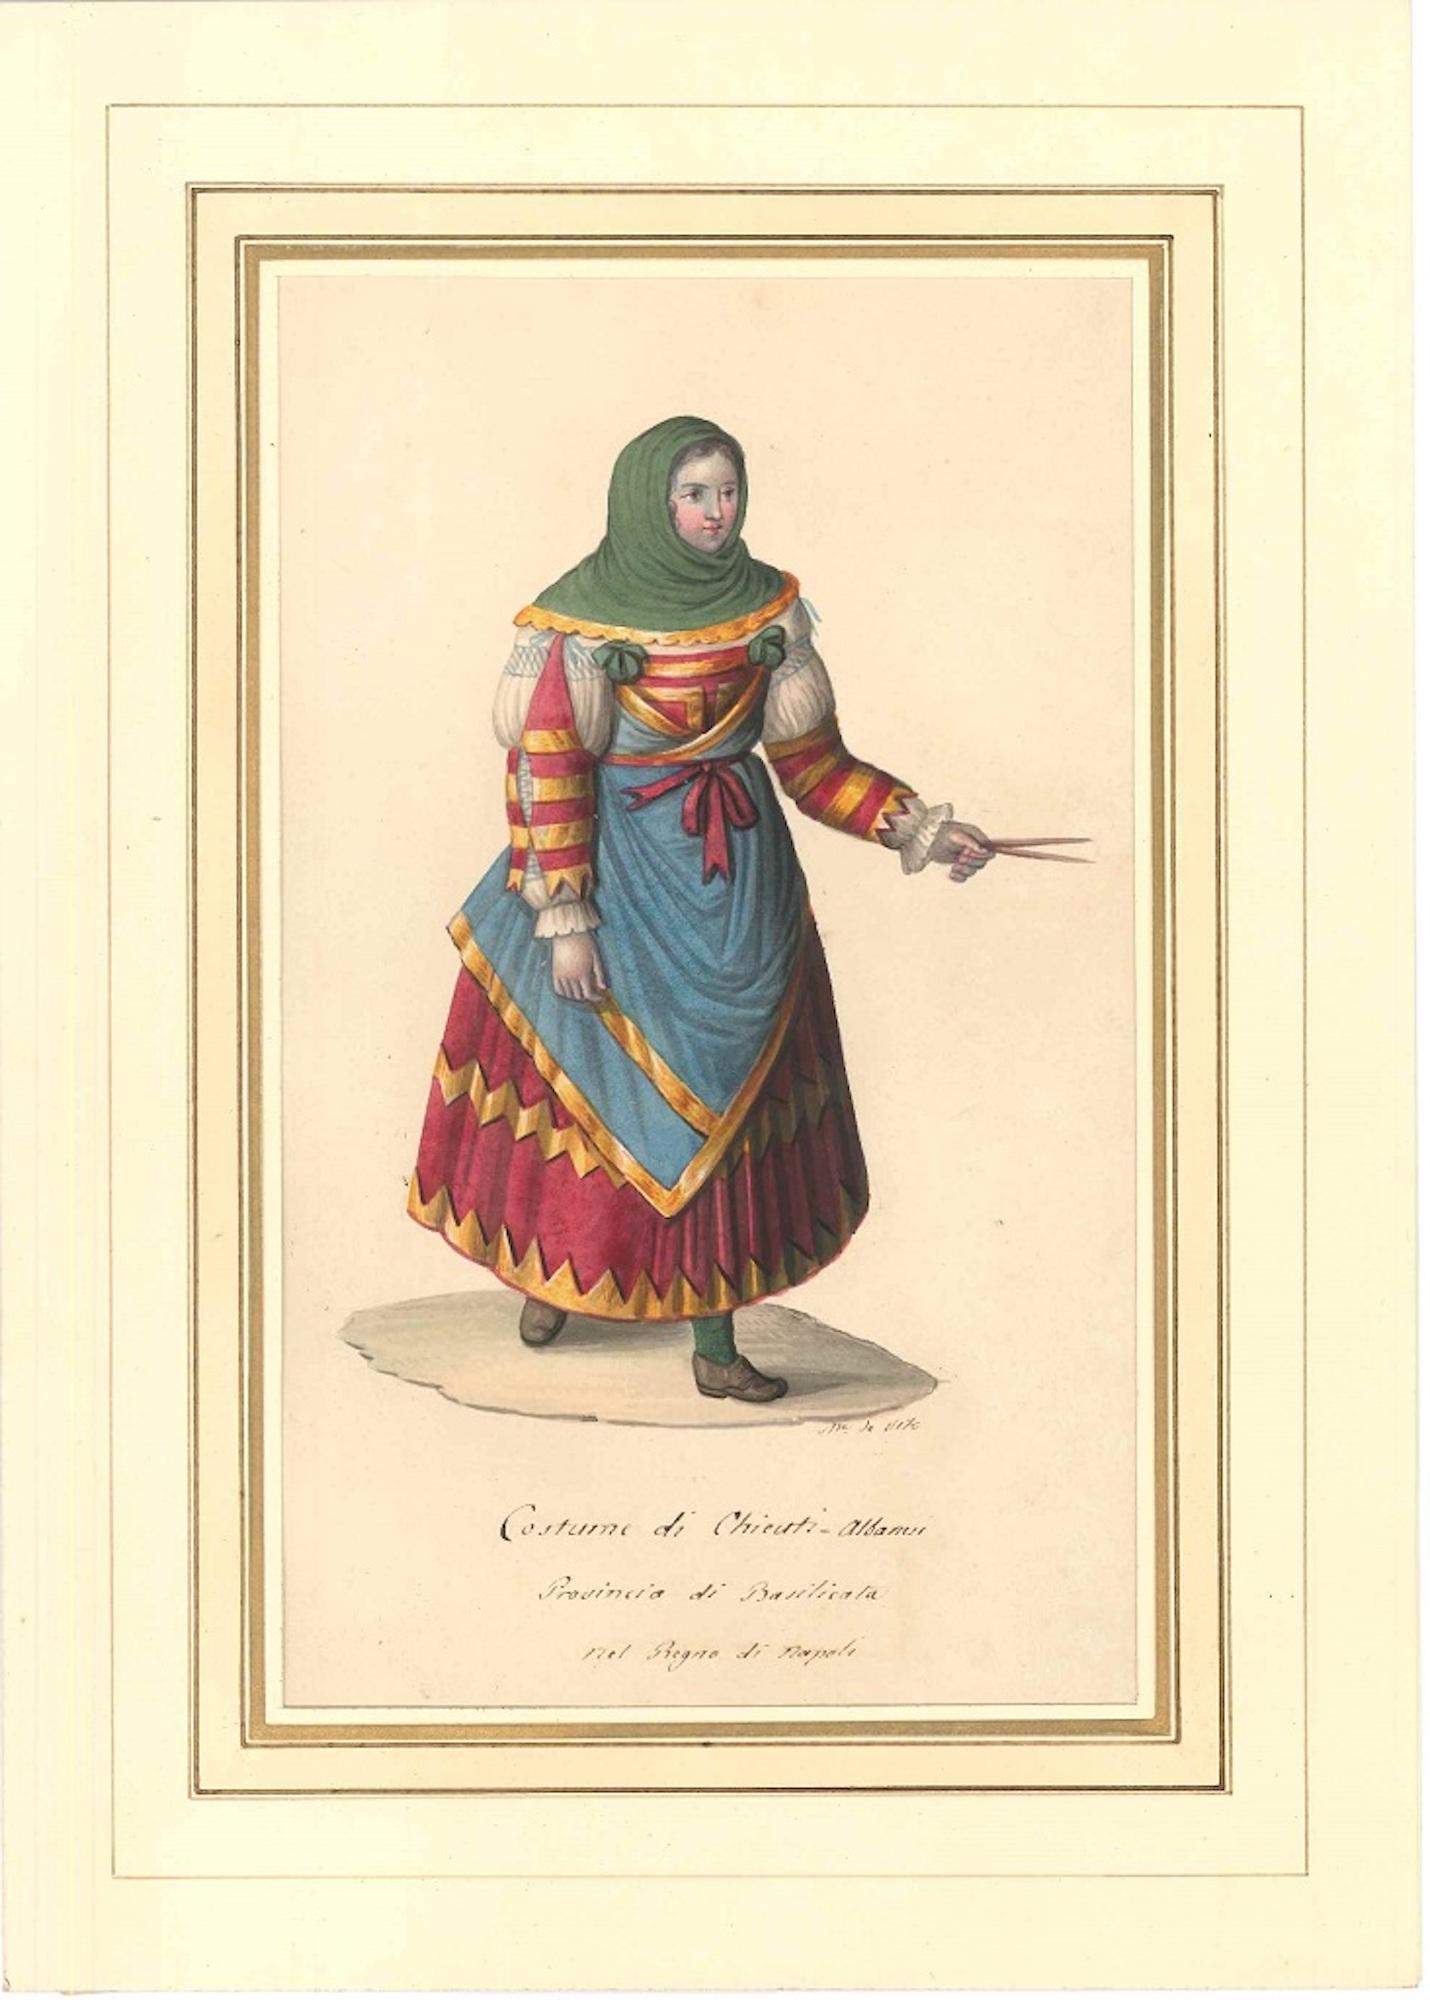 Costume di Chieuti Albanesi - Watercolor by M. De Vito - 1820 ca. - Art by Michela De Vito